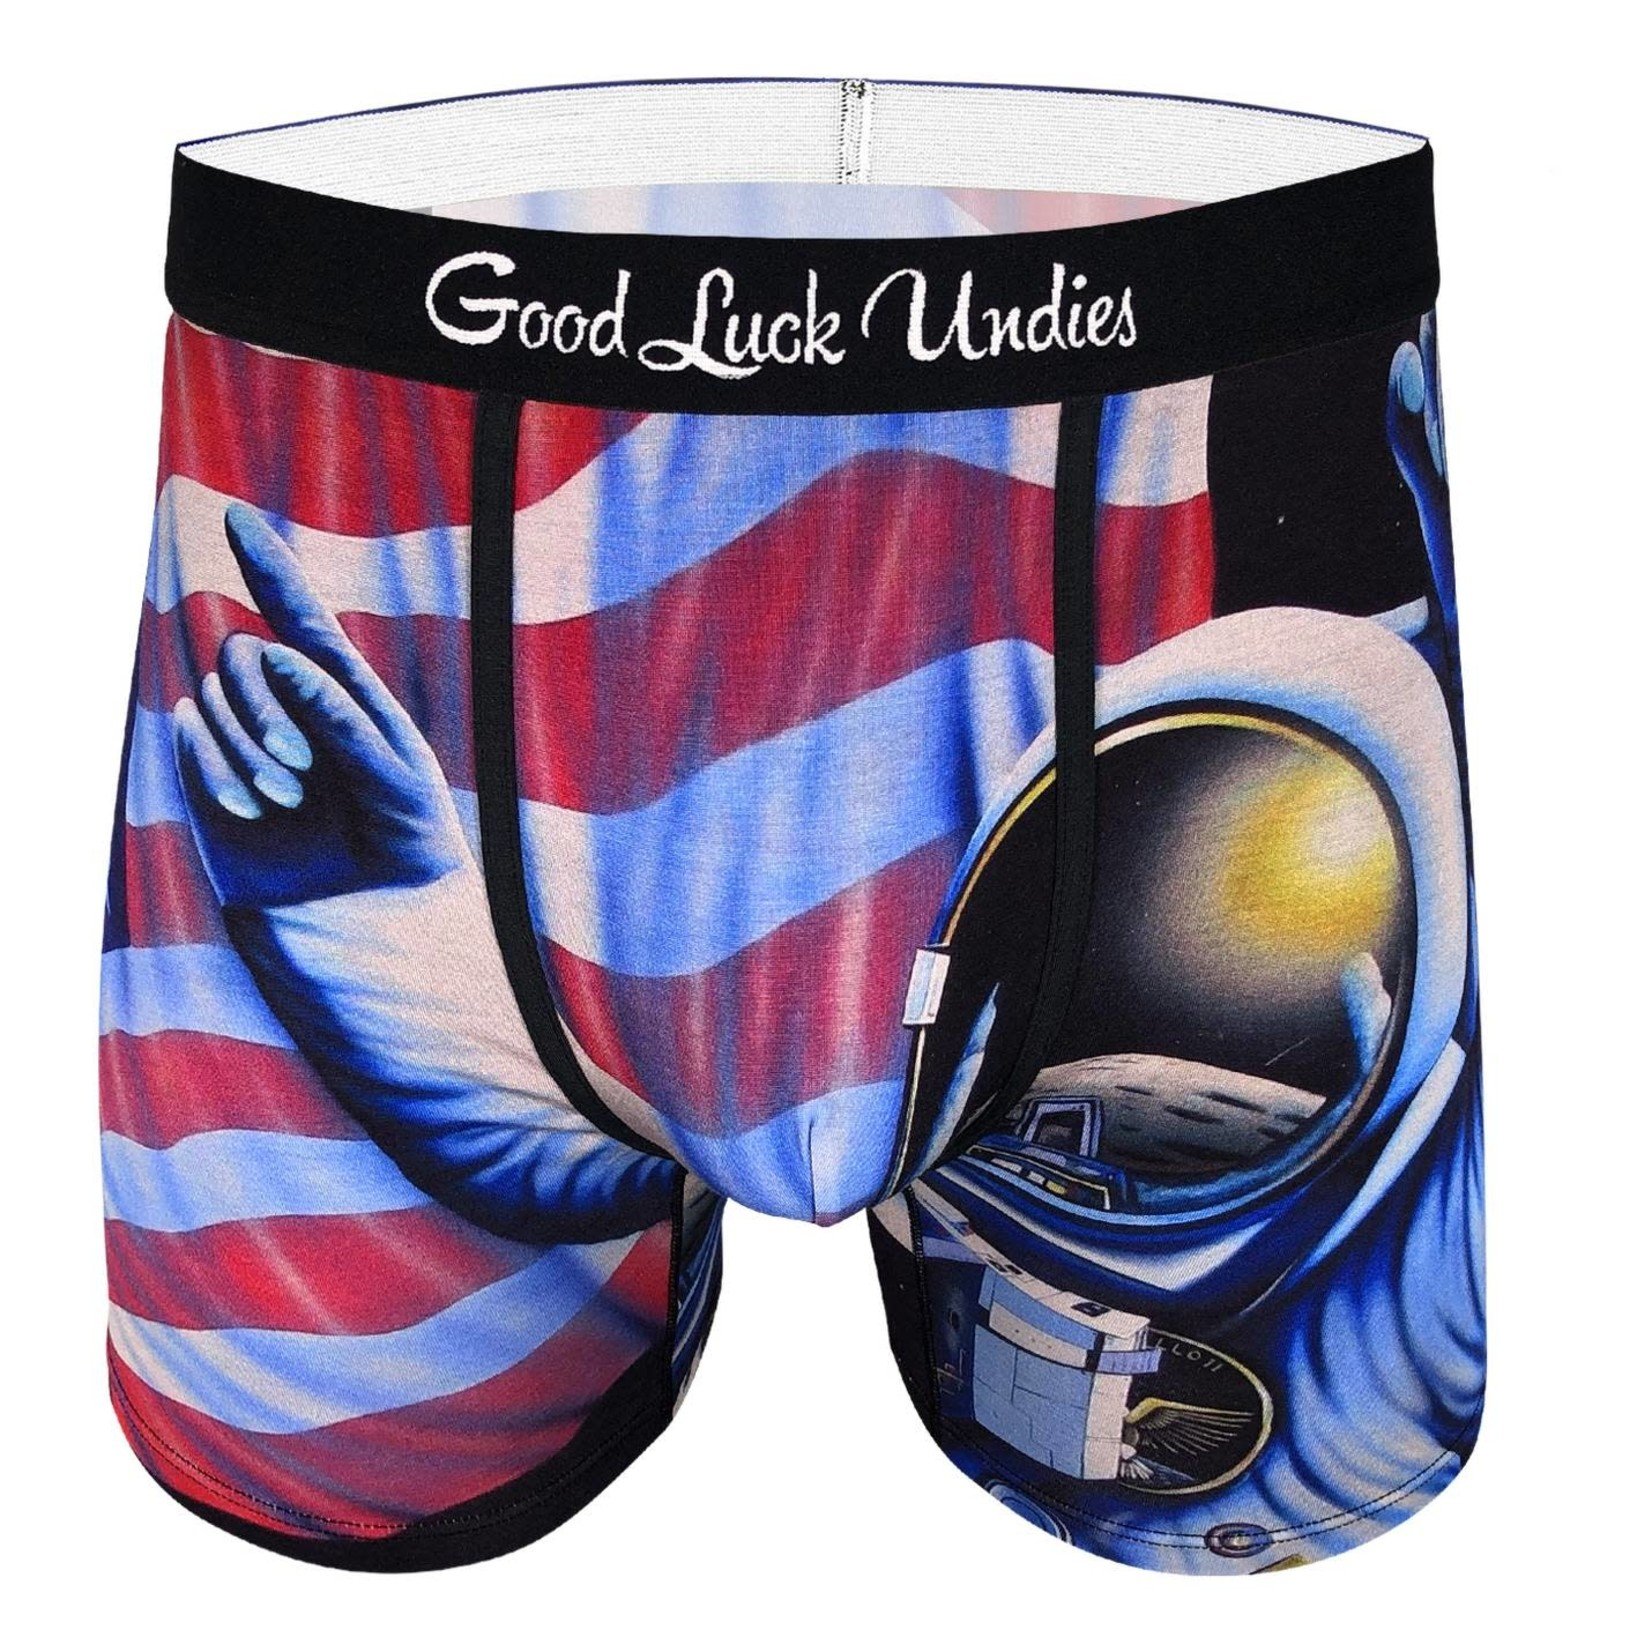 Good Luck Undies Mens Food Boxer Brief Underwear